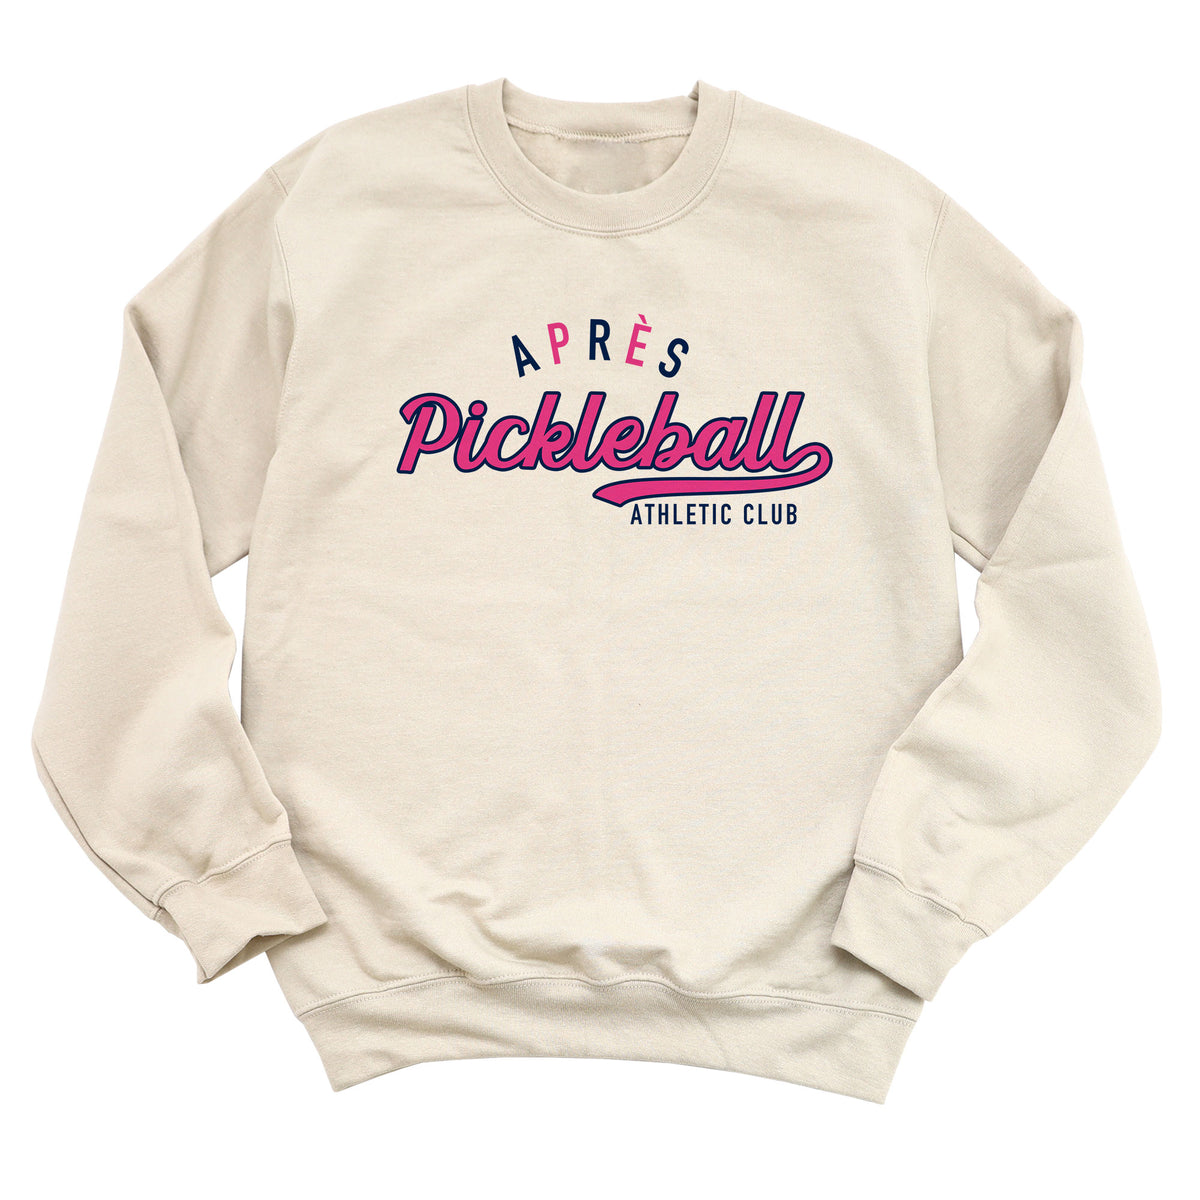 Après Pickleball Athlete Club Sweatshirt